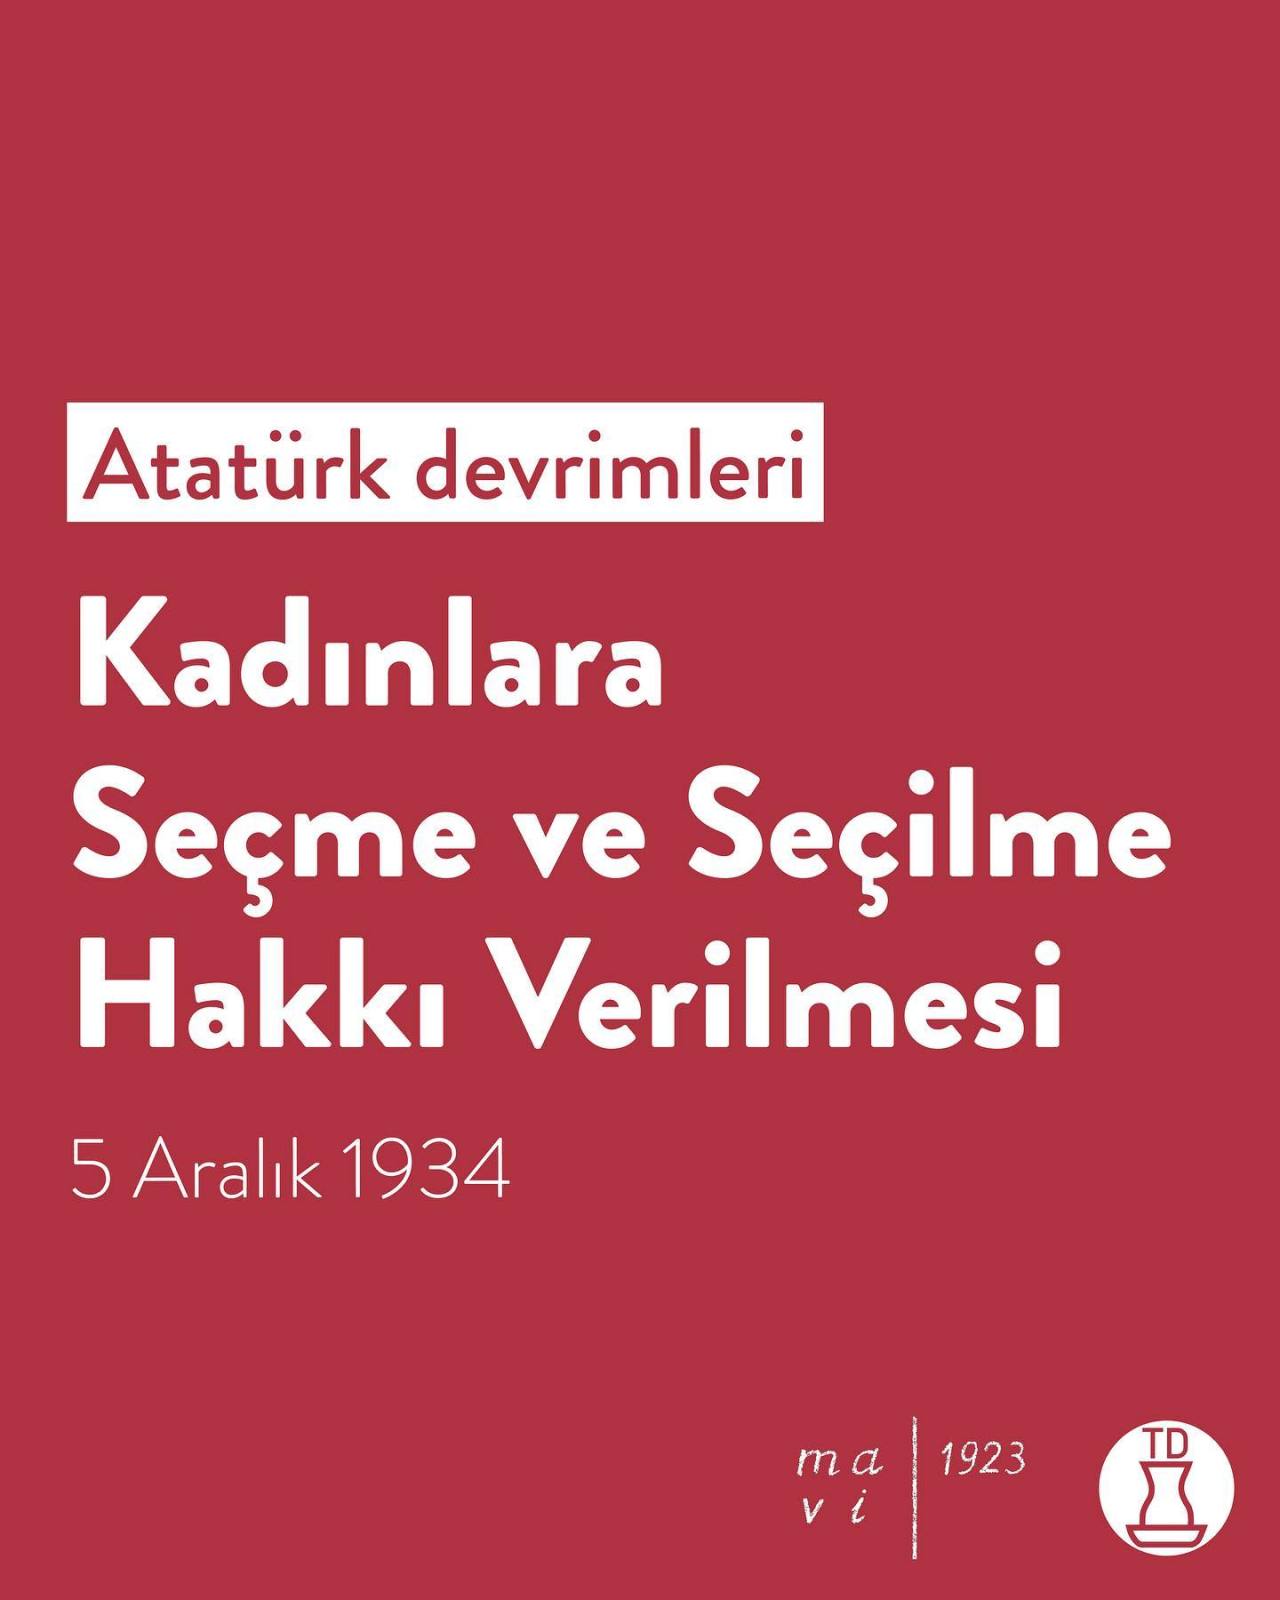 Atatürk devrimlerini...